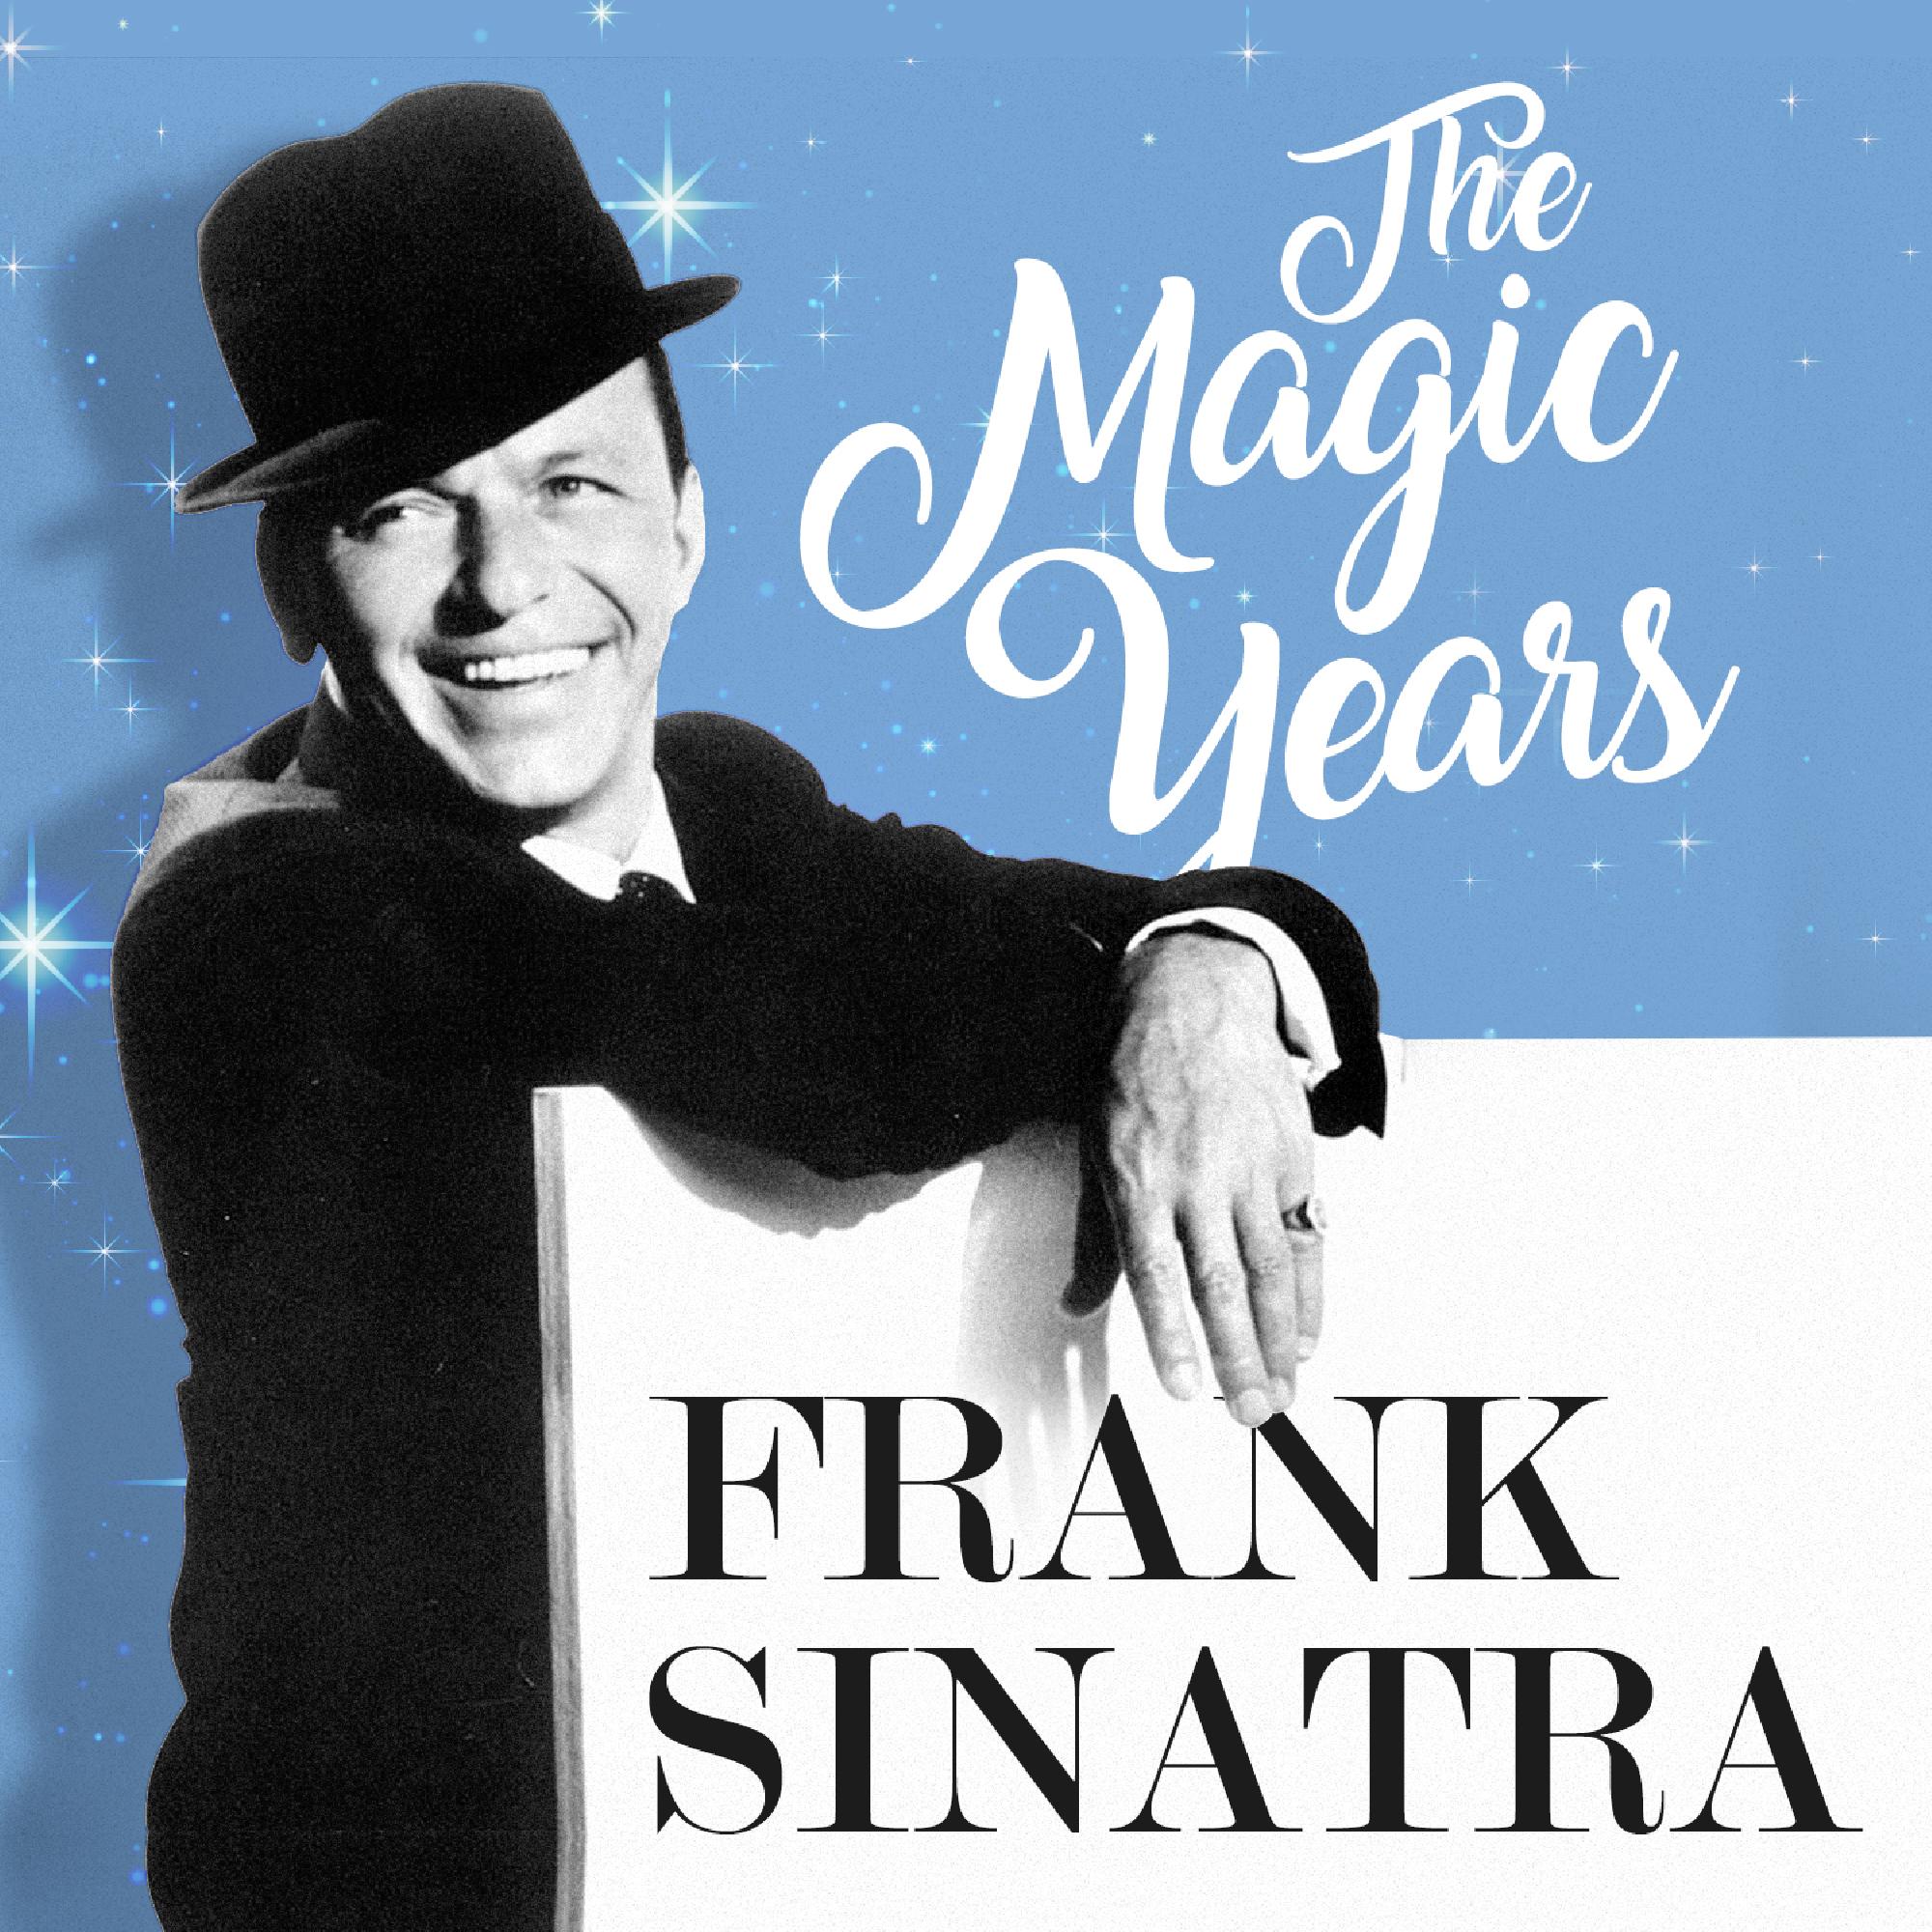 Фрэнк синатра на русском языке. Frank Sinatra обложка. Frank Sinatra обложка альбома. Фрэнк Синатра альбомы. Frank Sinatra album Cover.